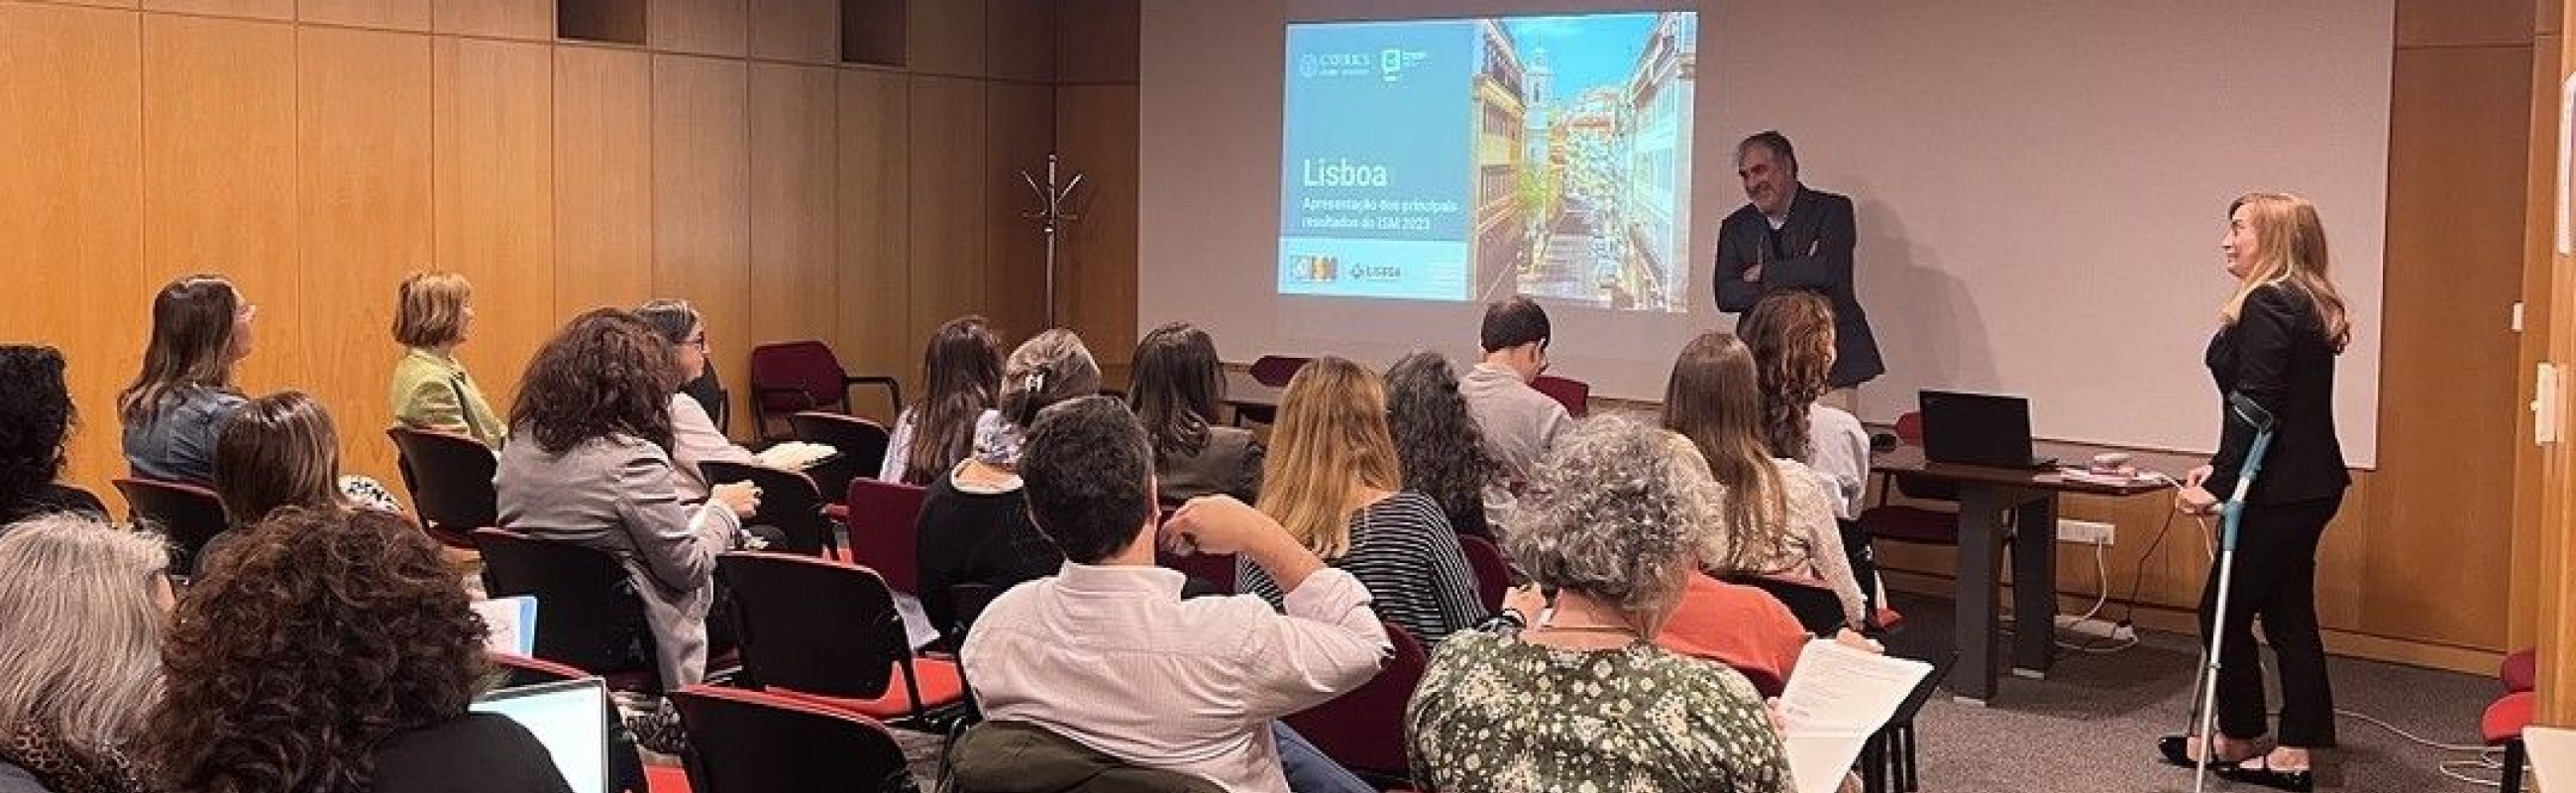 Município de Lisboa apresenta Índice de Sustentabilidade